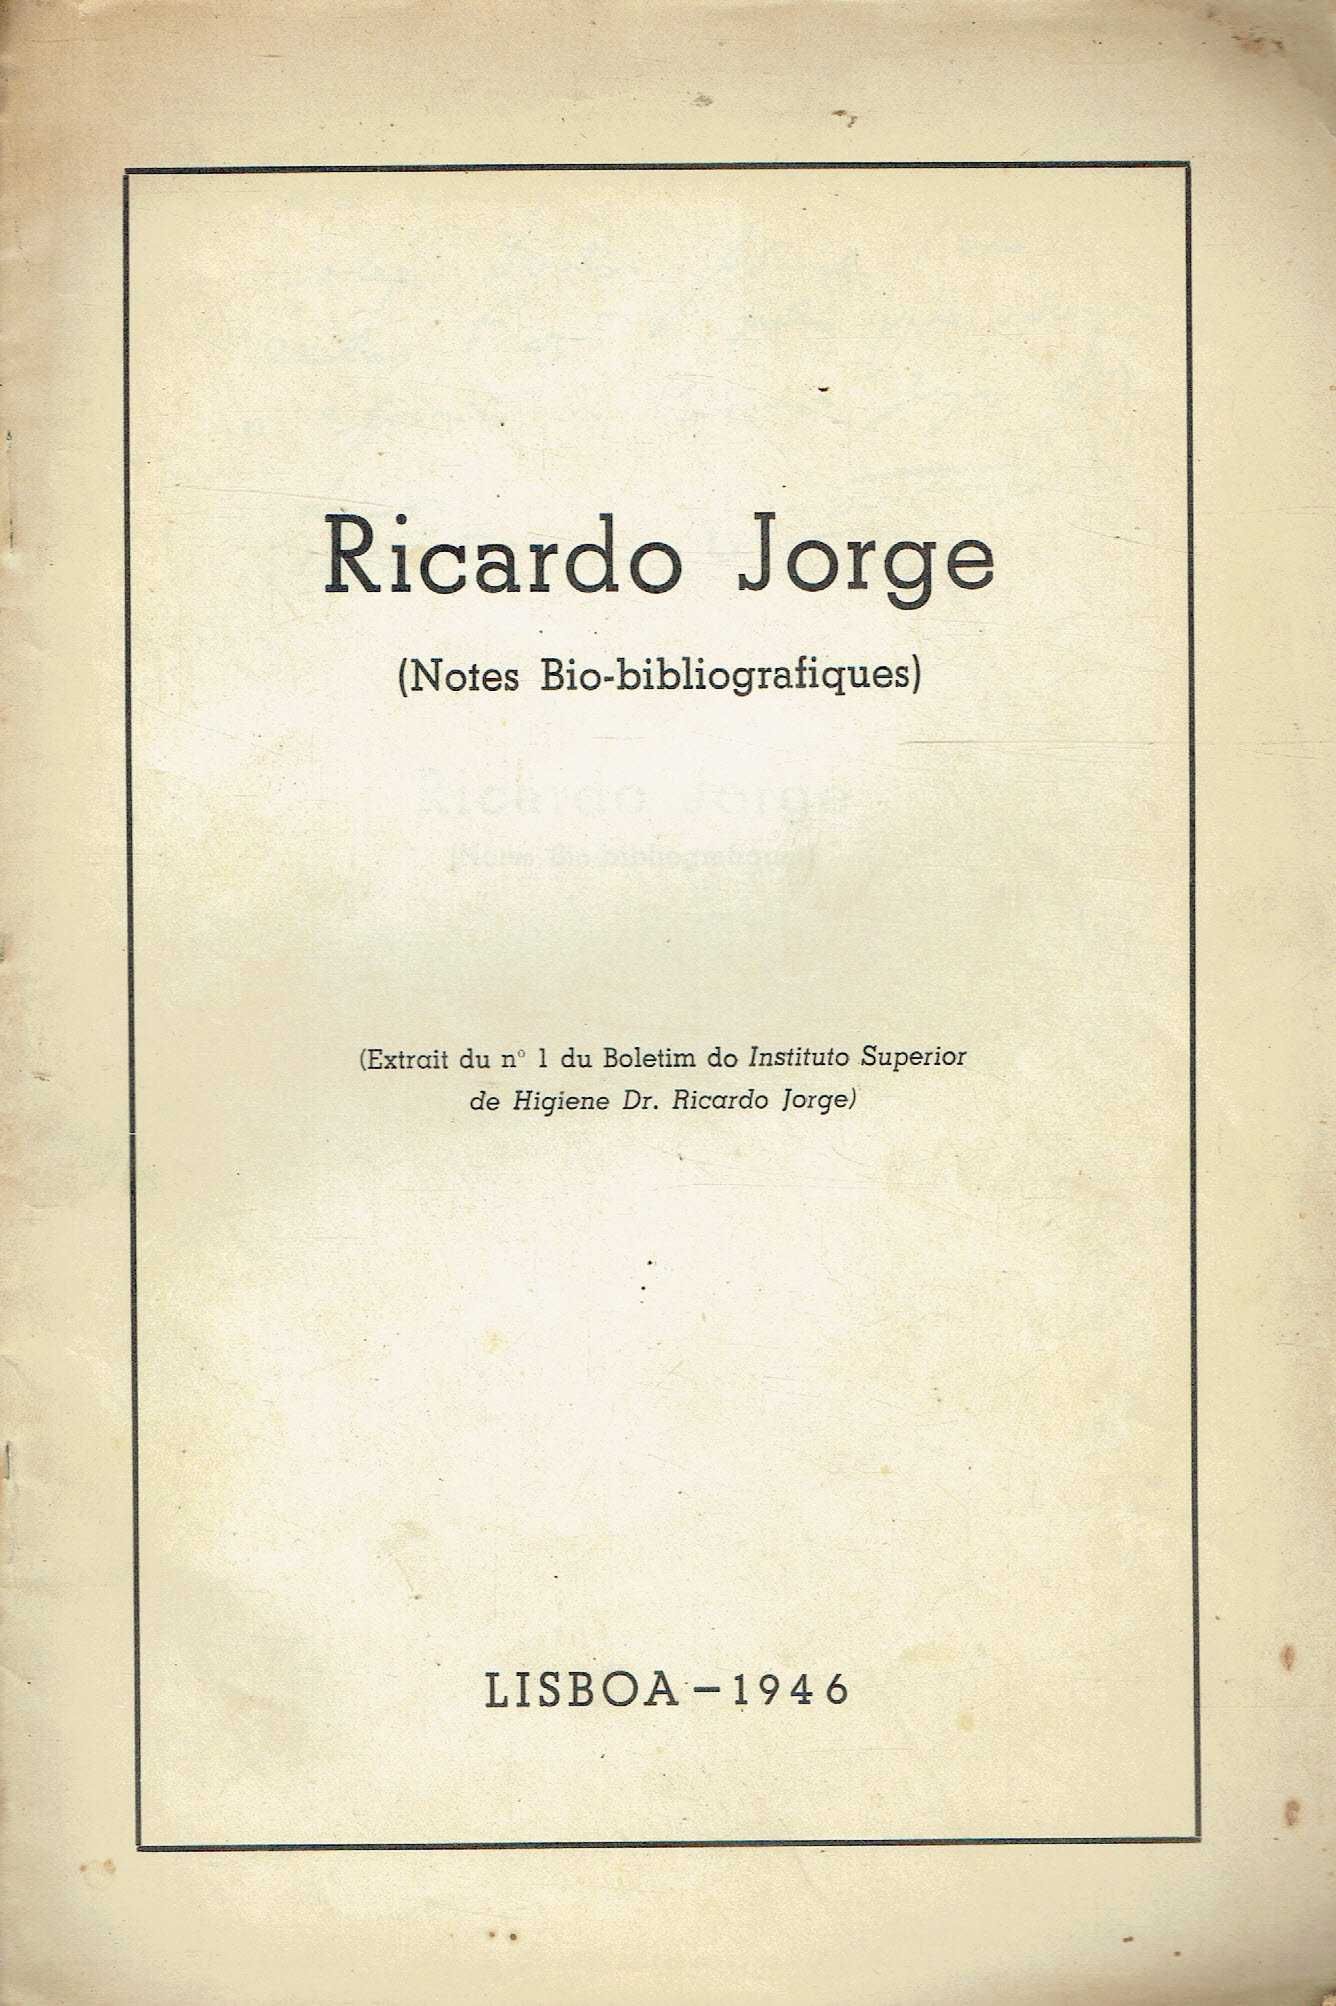 7999 - Livros de Ricardo Jorge